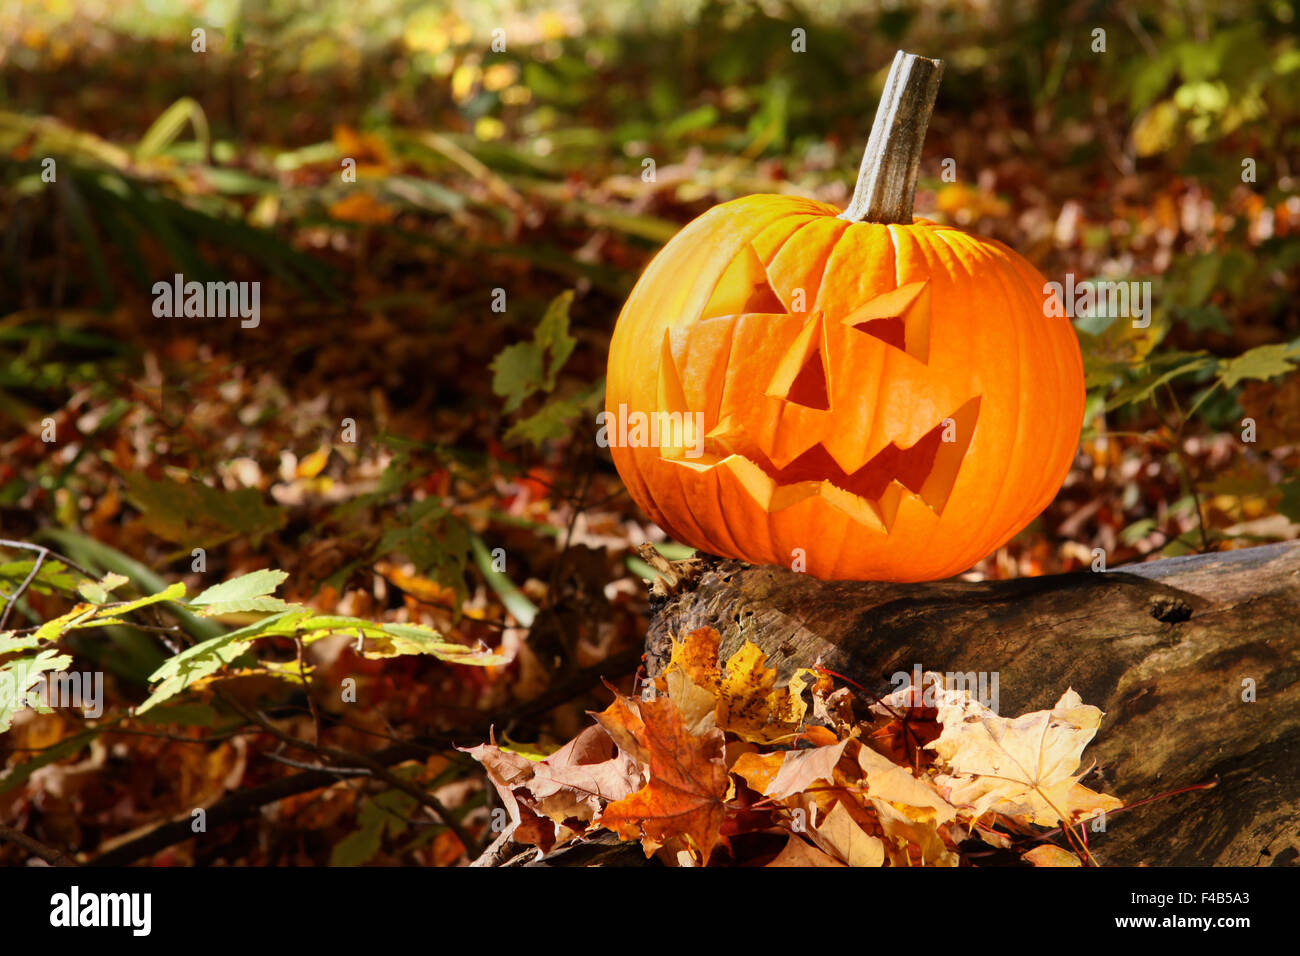 Funny face pumpkin sur tronc d'arbre dans la forêt Banque D'Images